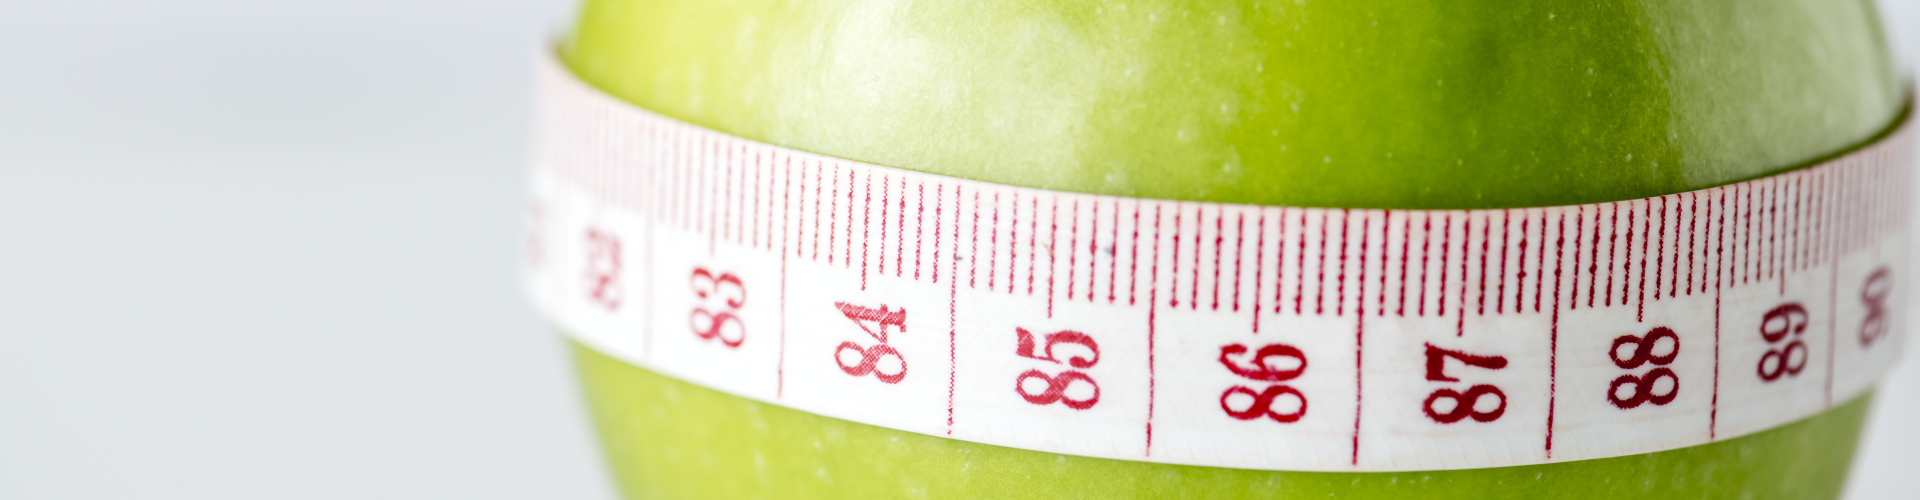 BMI apple healthy diet